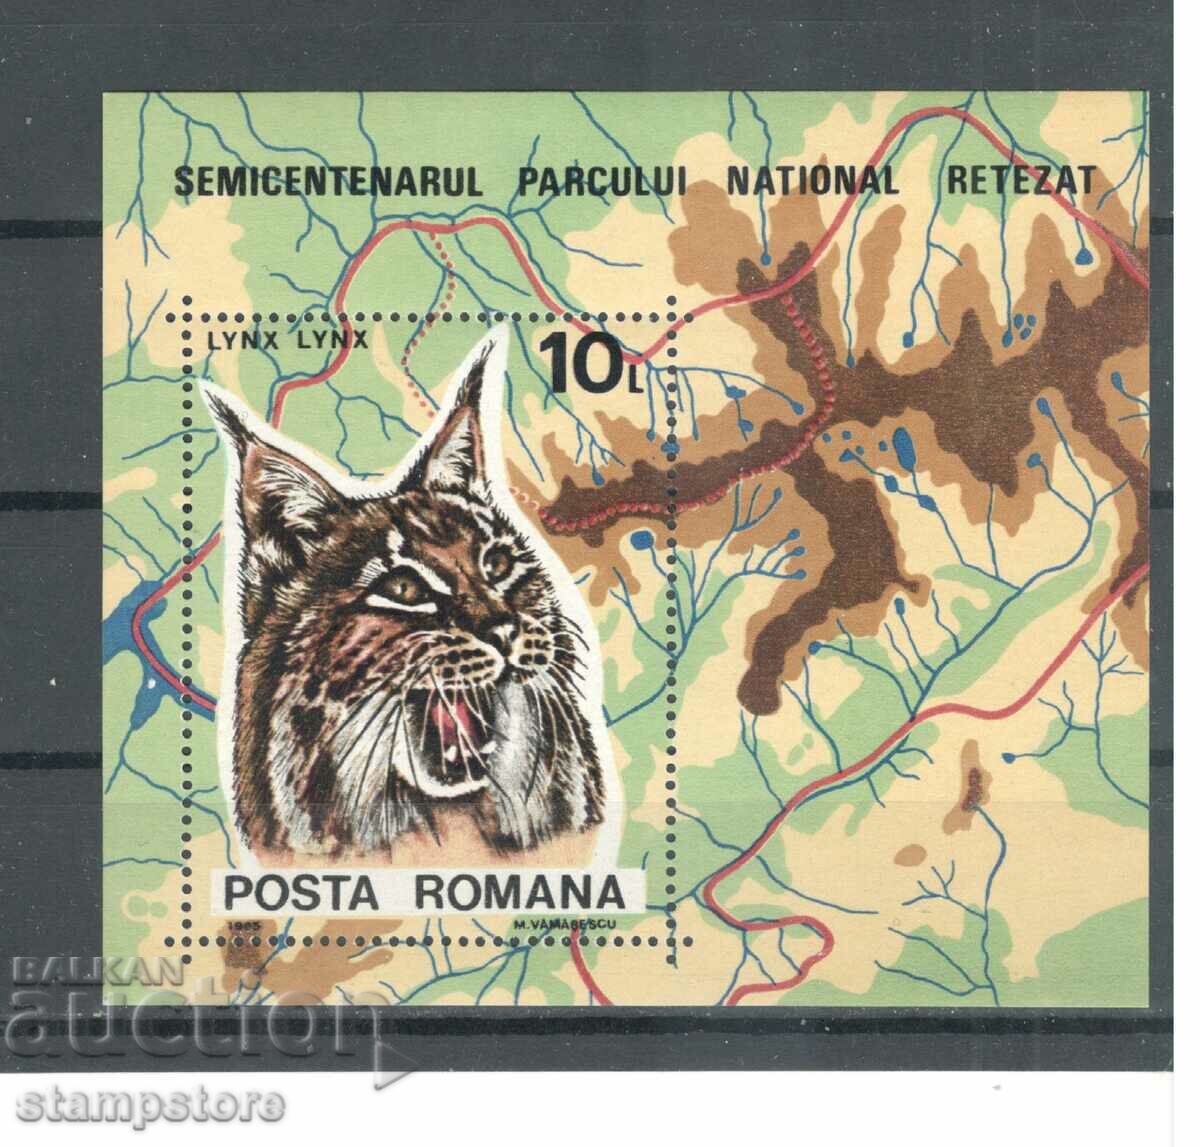 Ρουμανία - Εθνικά πάρκα και καταφύγια